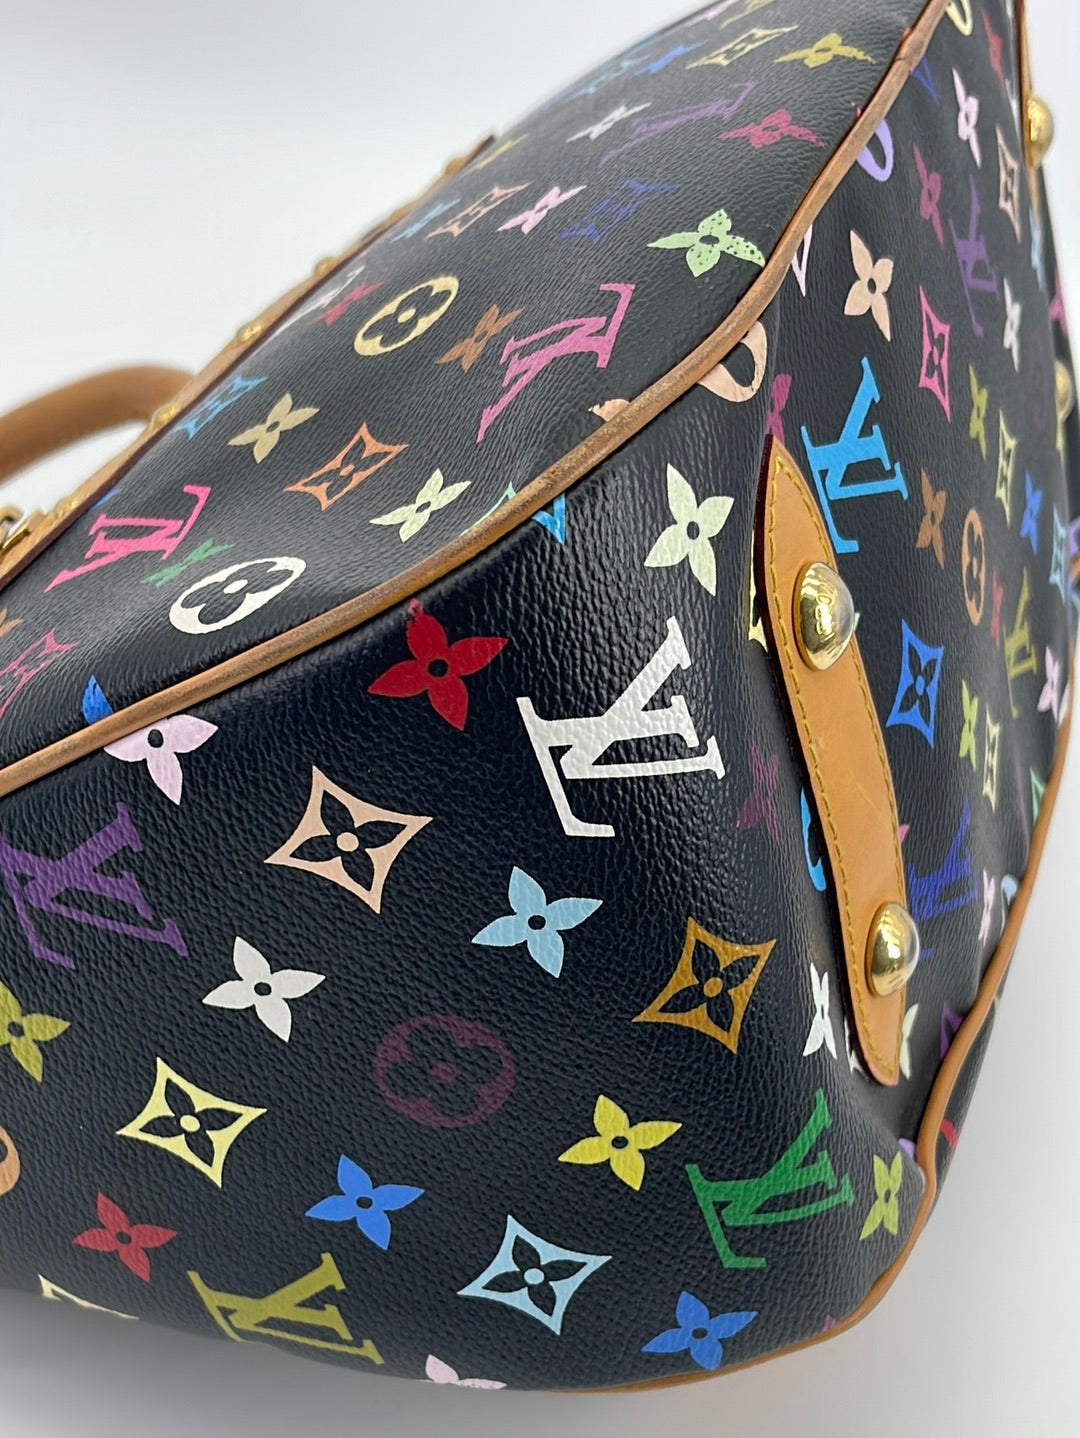 Preloved Louis Vuitton Black Multicolor Monogram Rita Shoulder Bag